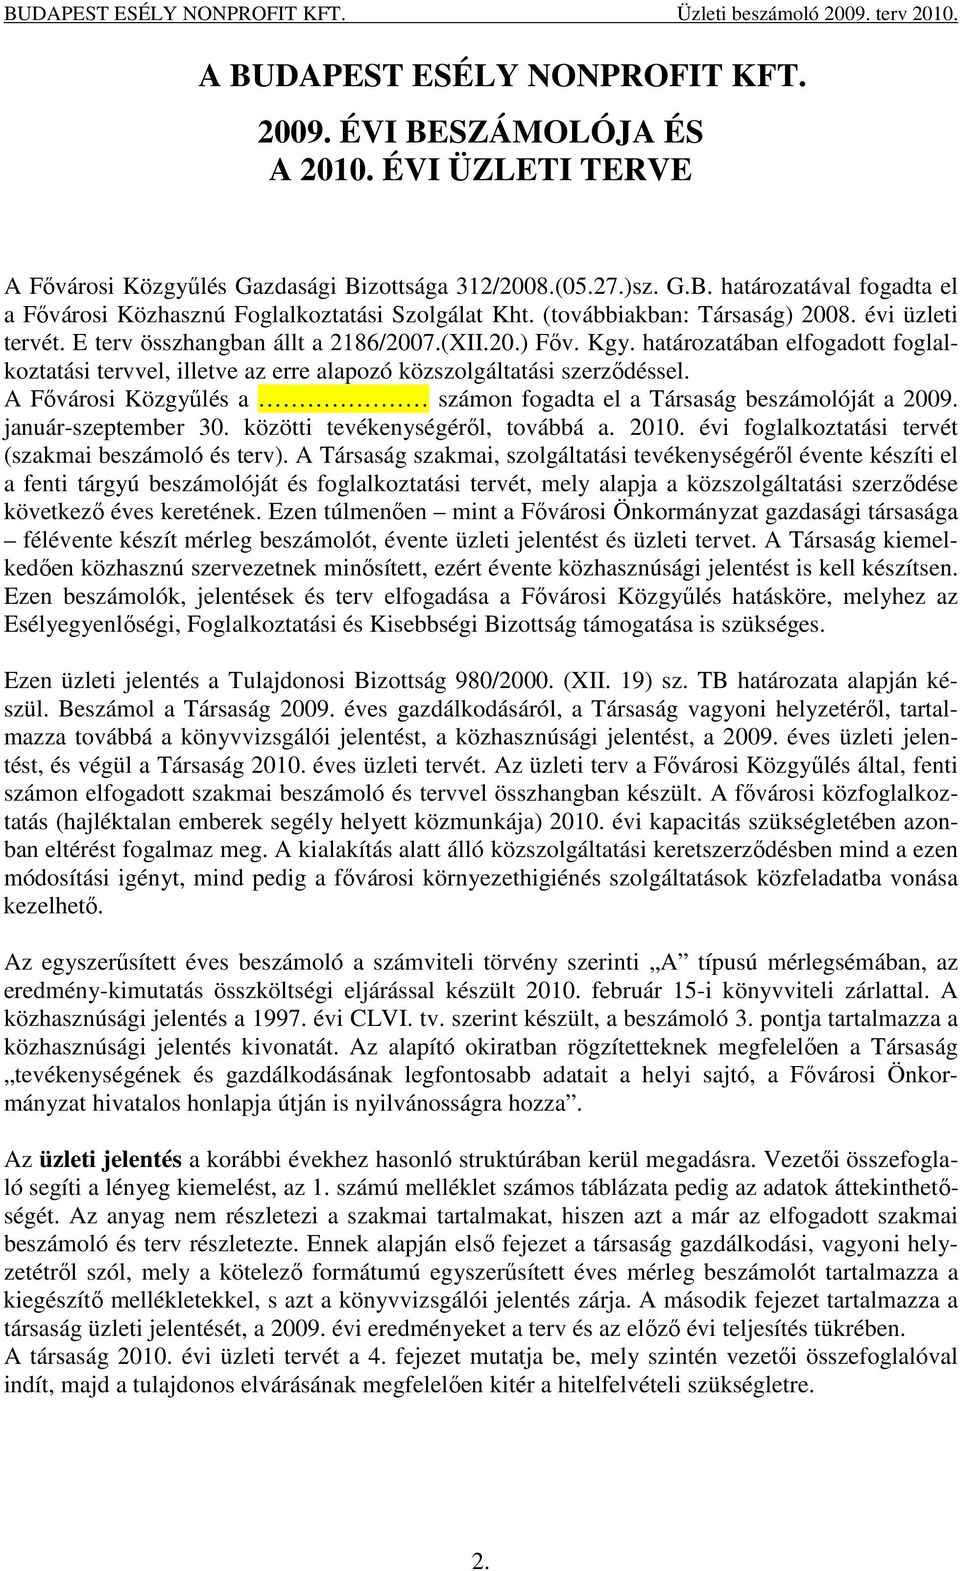 határozatában elfogadott foglalkoztatási tervvel, illetve az erre alapozó közszolgáltatási szerzıdéssel. A Fıvárosi Közgyőlés a számon fogadta el a Társaság beszámolóját a 2009. január-szeptember 30.